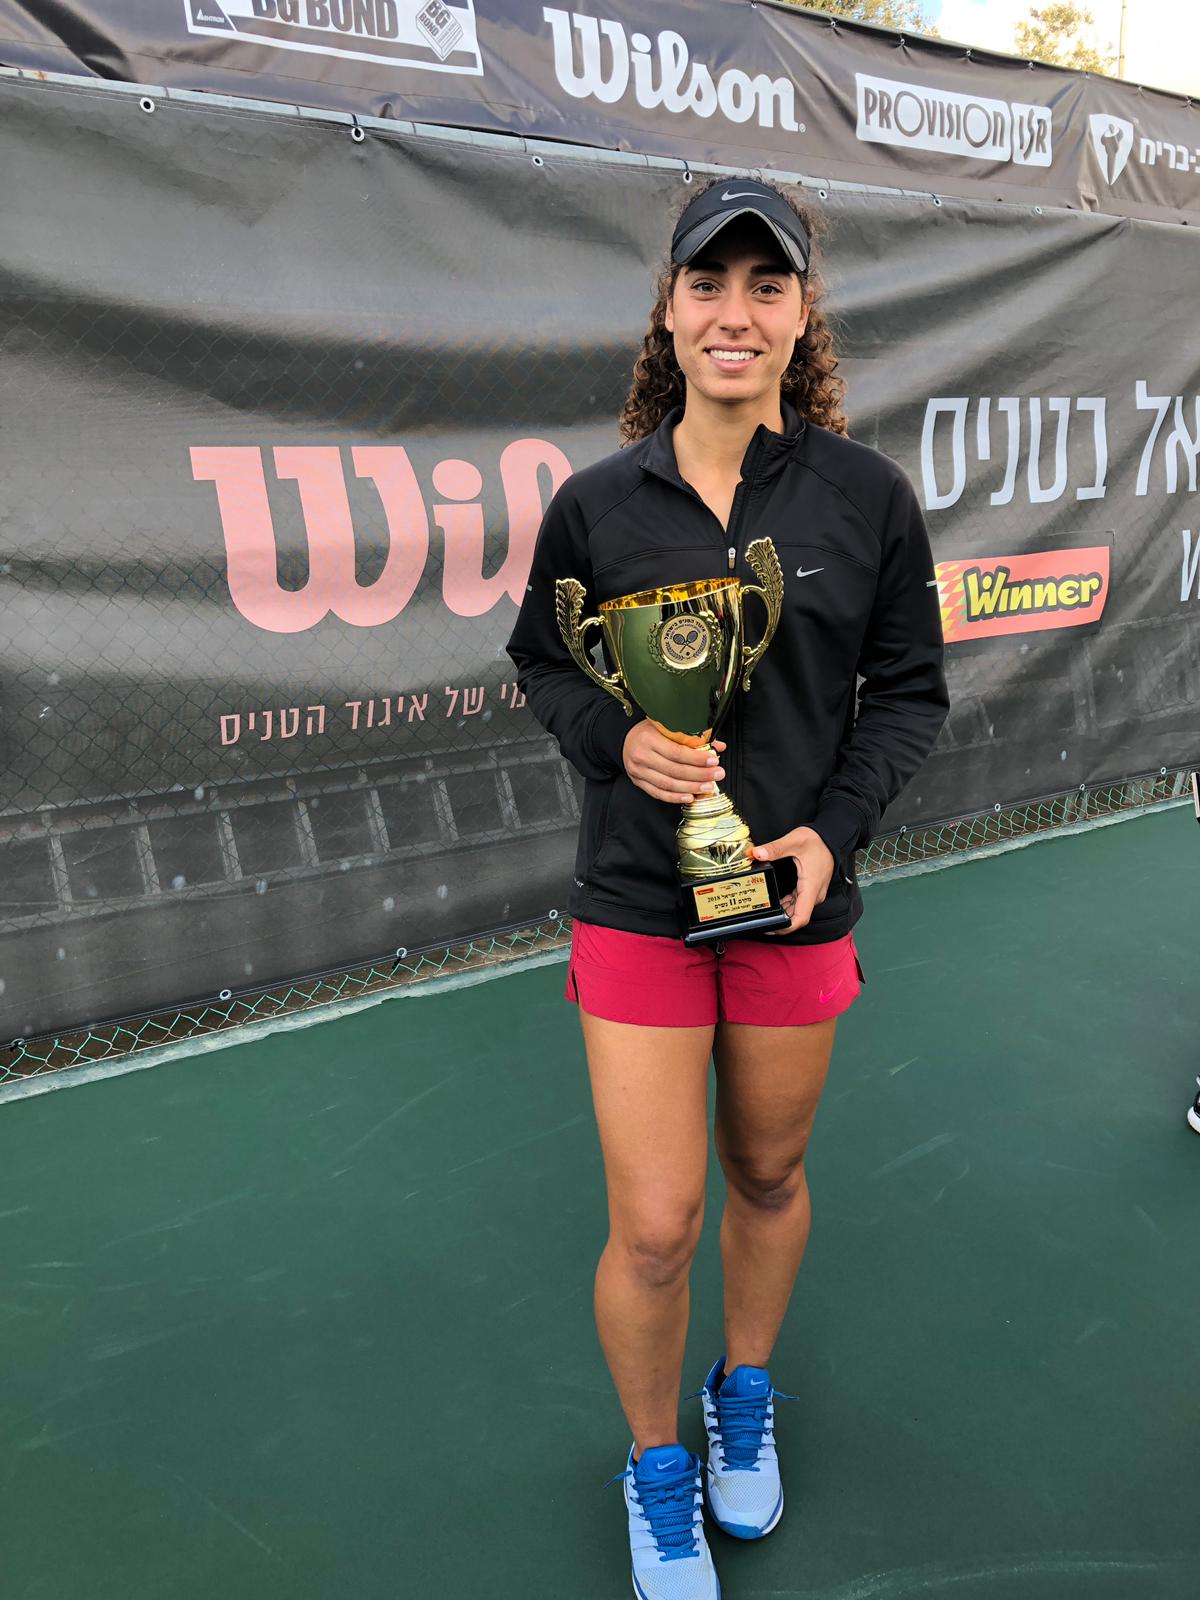 מיה טחן ממועדון הטניס רעננה זכתה בתואר סגנית אלופת ישראל בטניס!